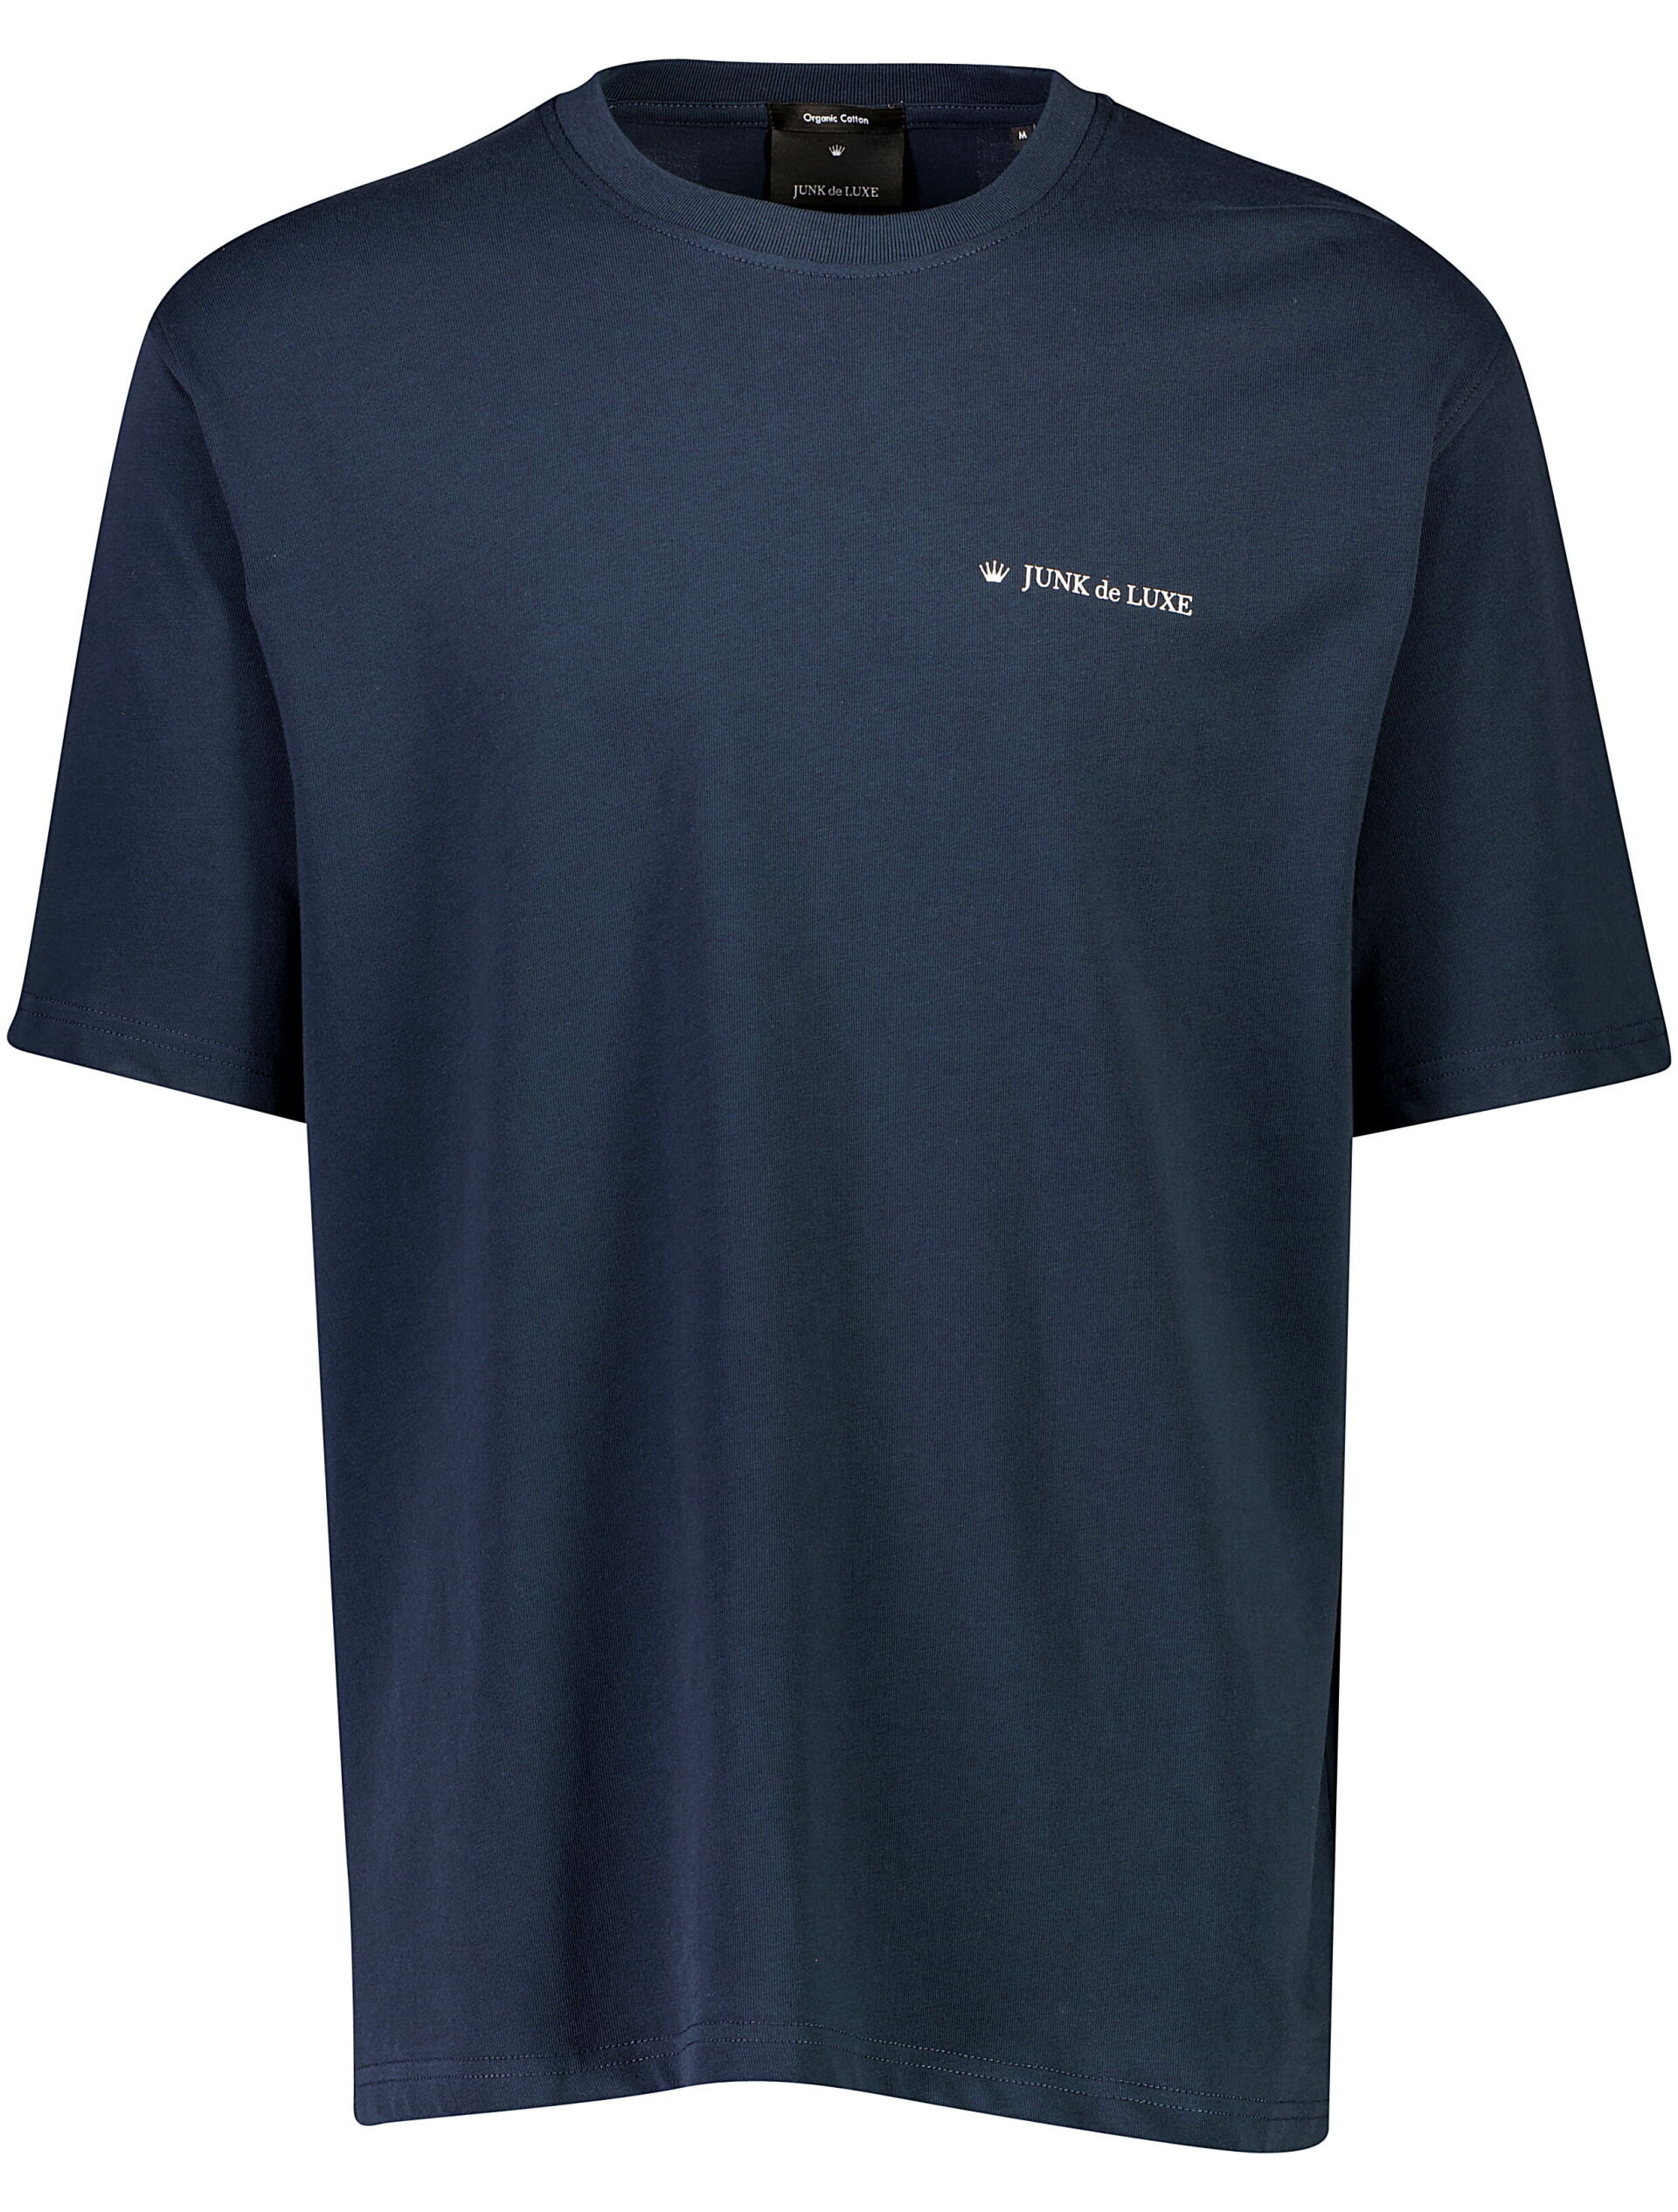 Junk de Luxe  T-shirt 60-455019